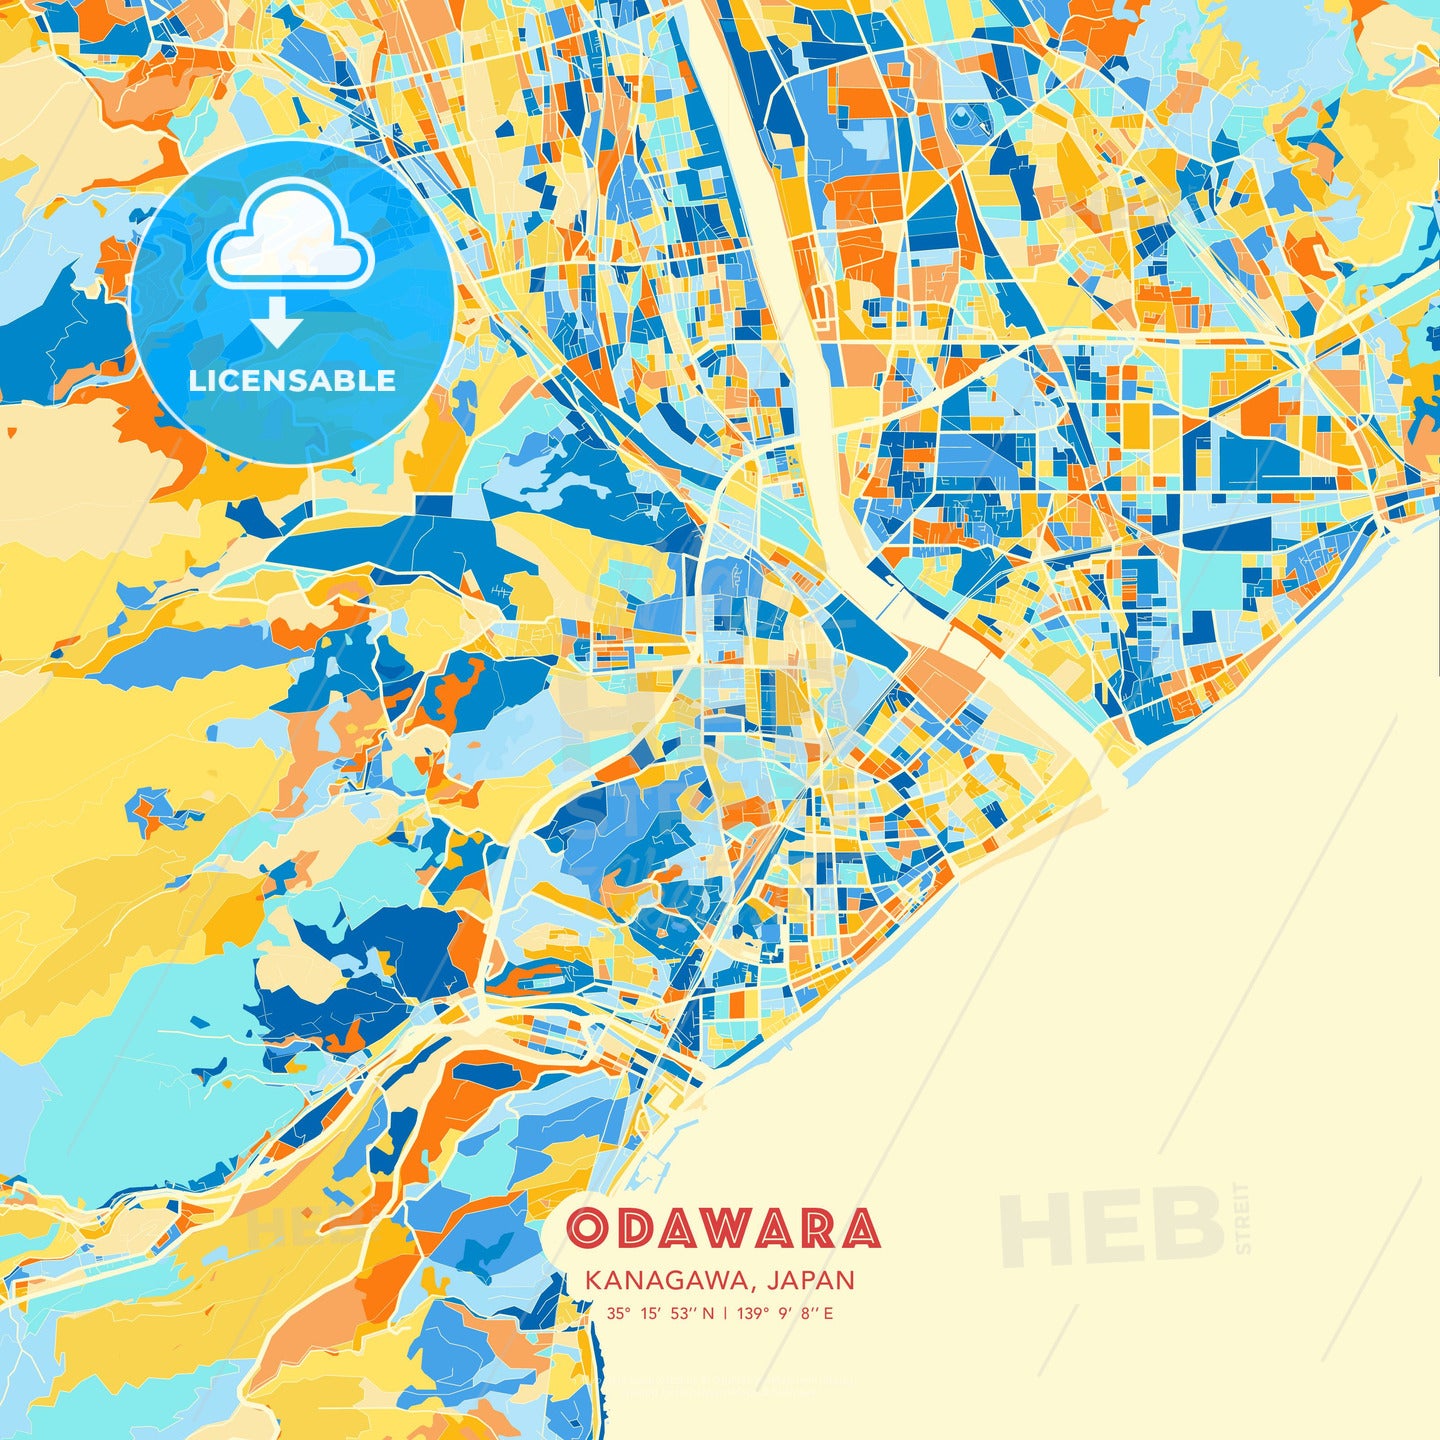 Odawara, Kanagawa, Japan, map - HEBSTREITS Sketches